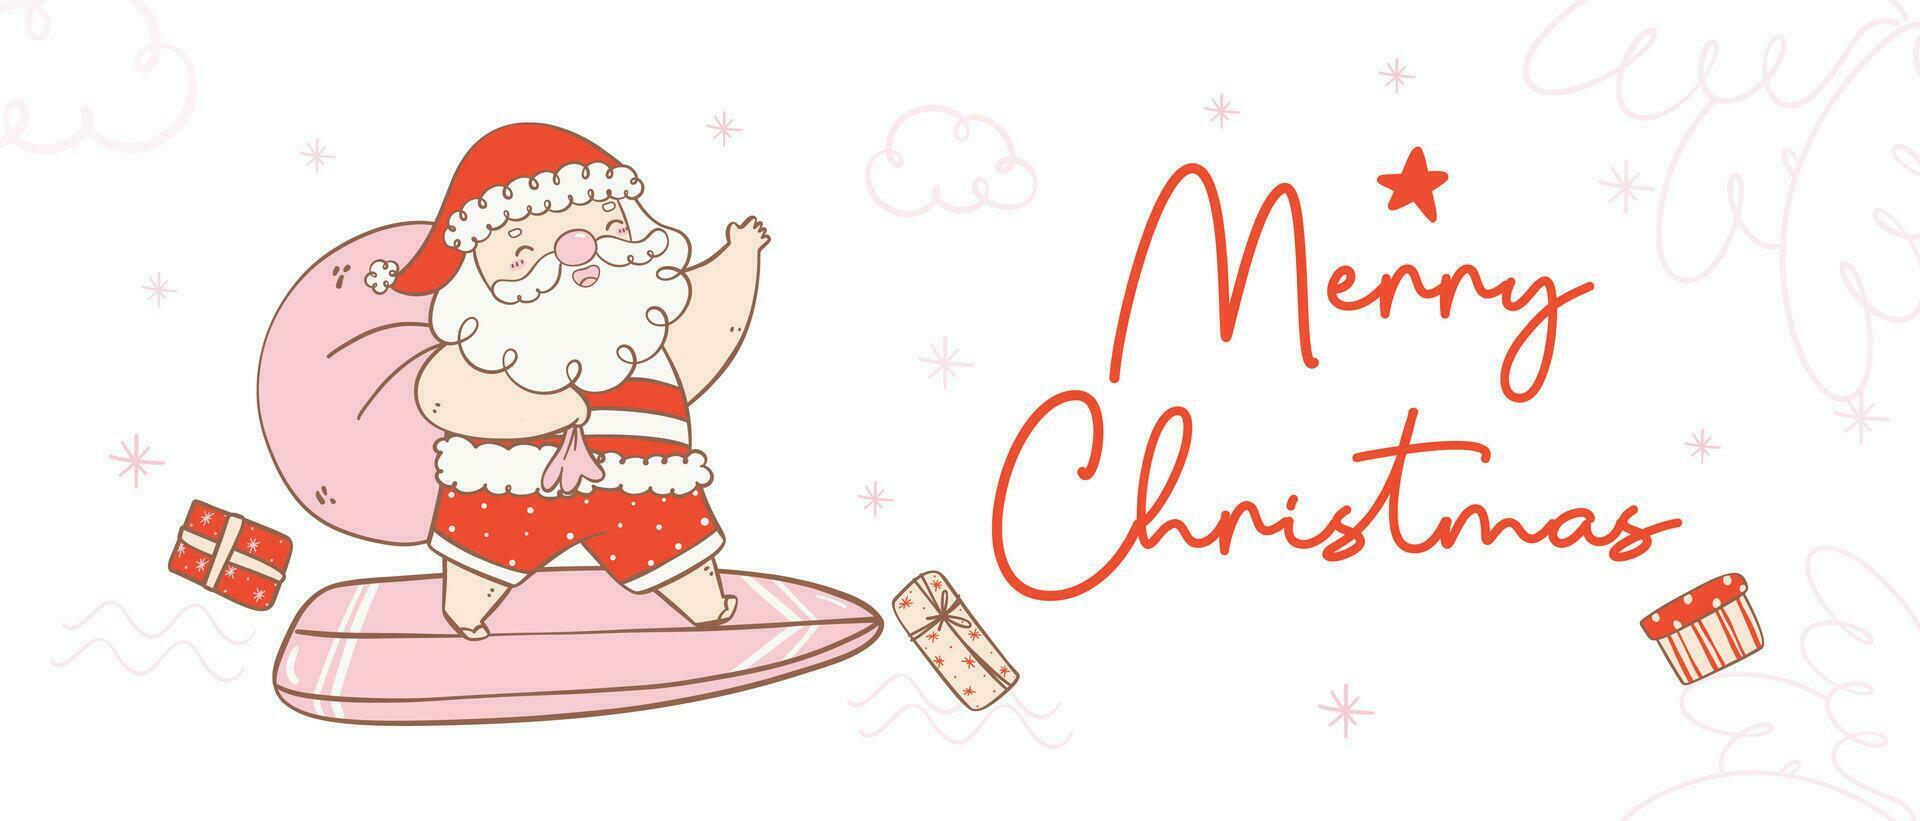 linda verano Navidad Papa Noel claus surf con regalos. kawaii verano Navidad fiesta dibujos animados garabatear mano dibujo bandera vector